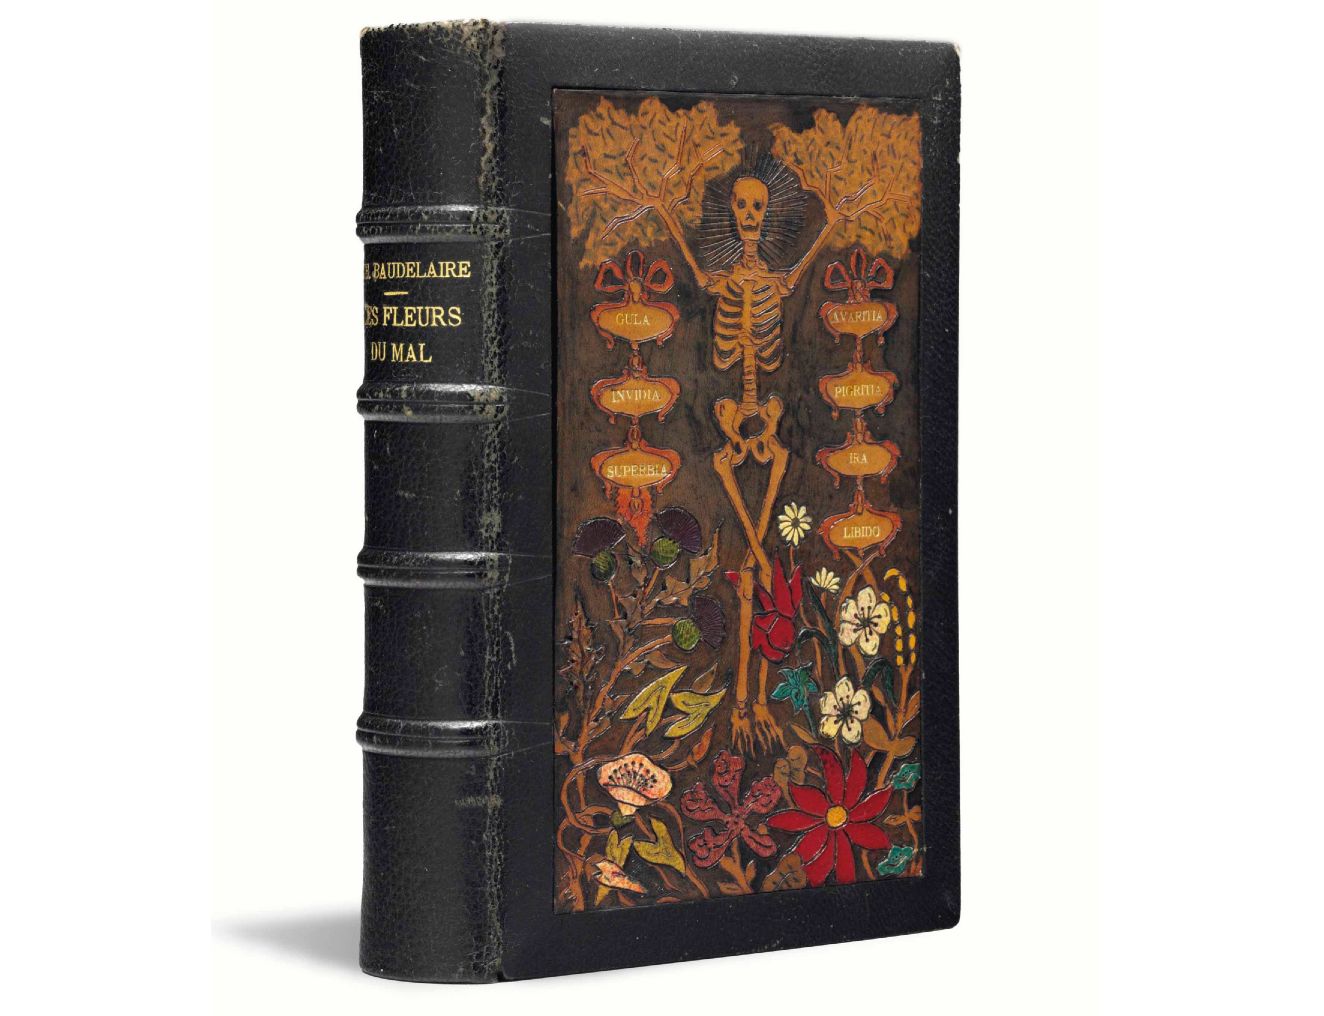 Charles Baudelaire: Les Fleurs du Mal, Paris, Michel Lévy, The First Edition,1868  